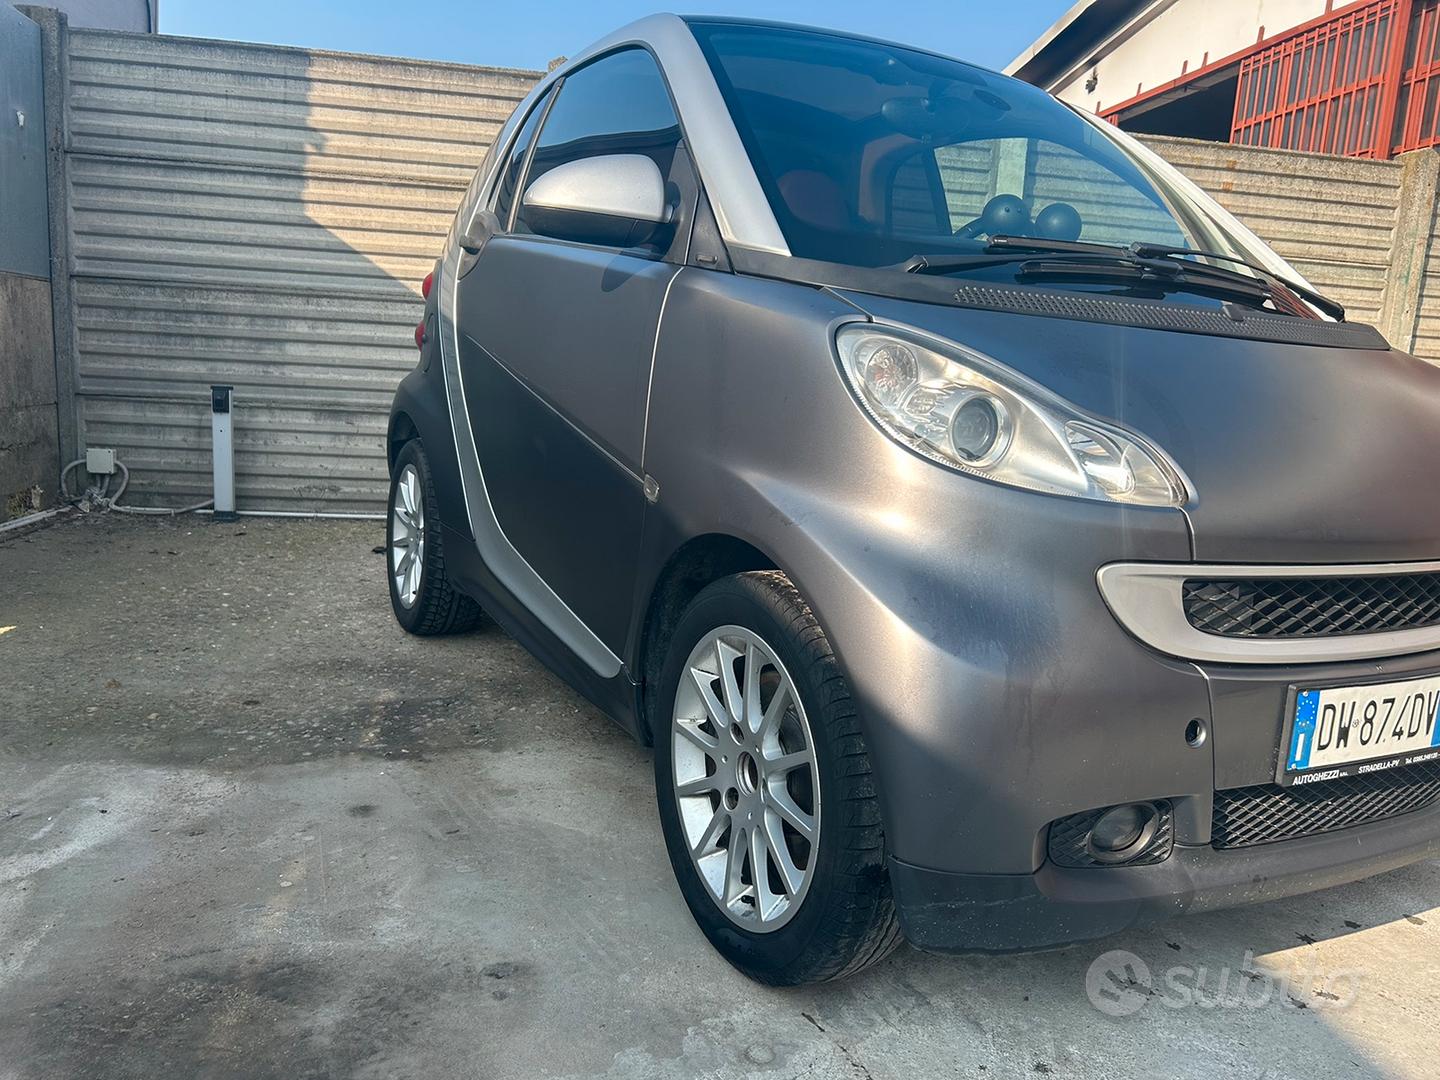 Smart 451 mhd - Accessori Auto In vendita a Milano